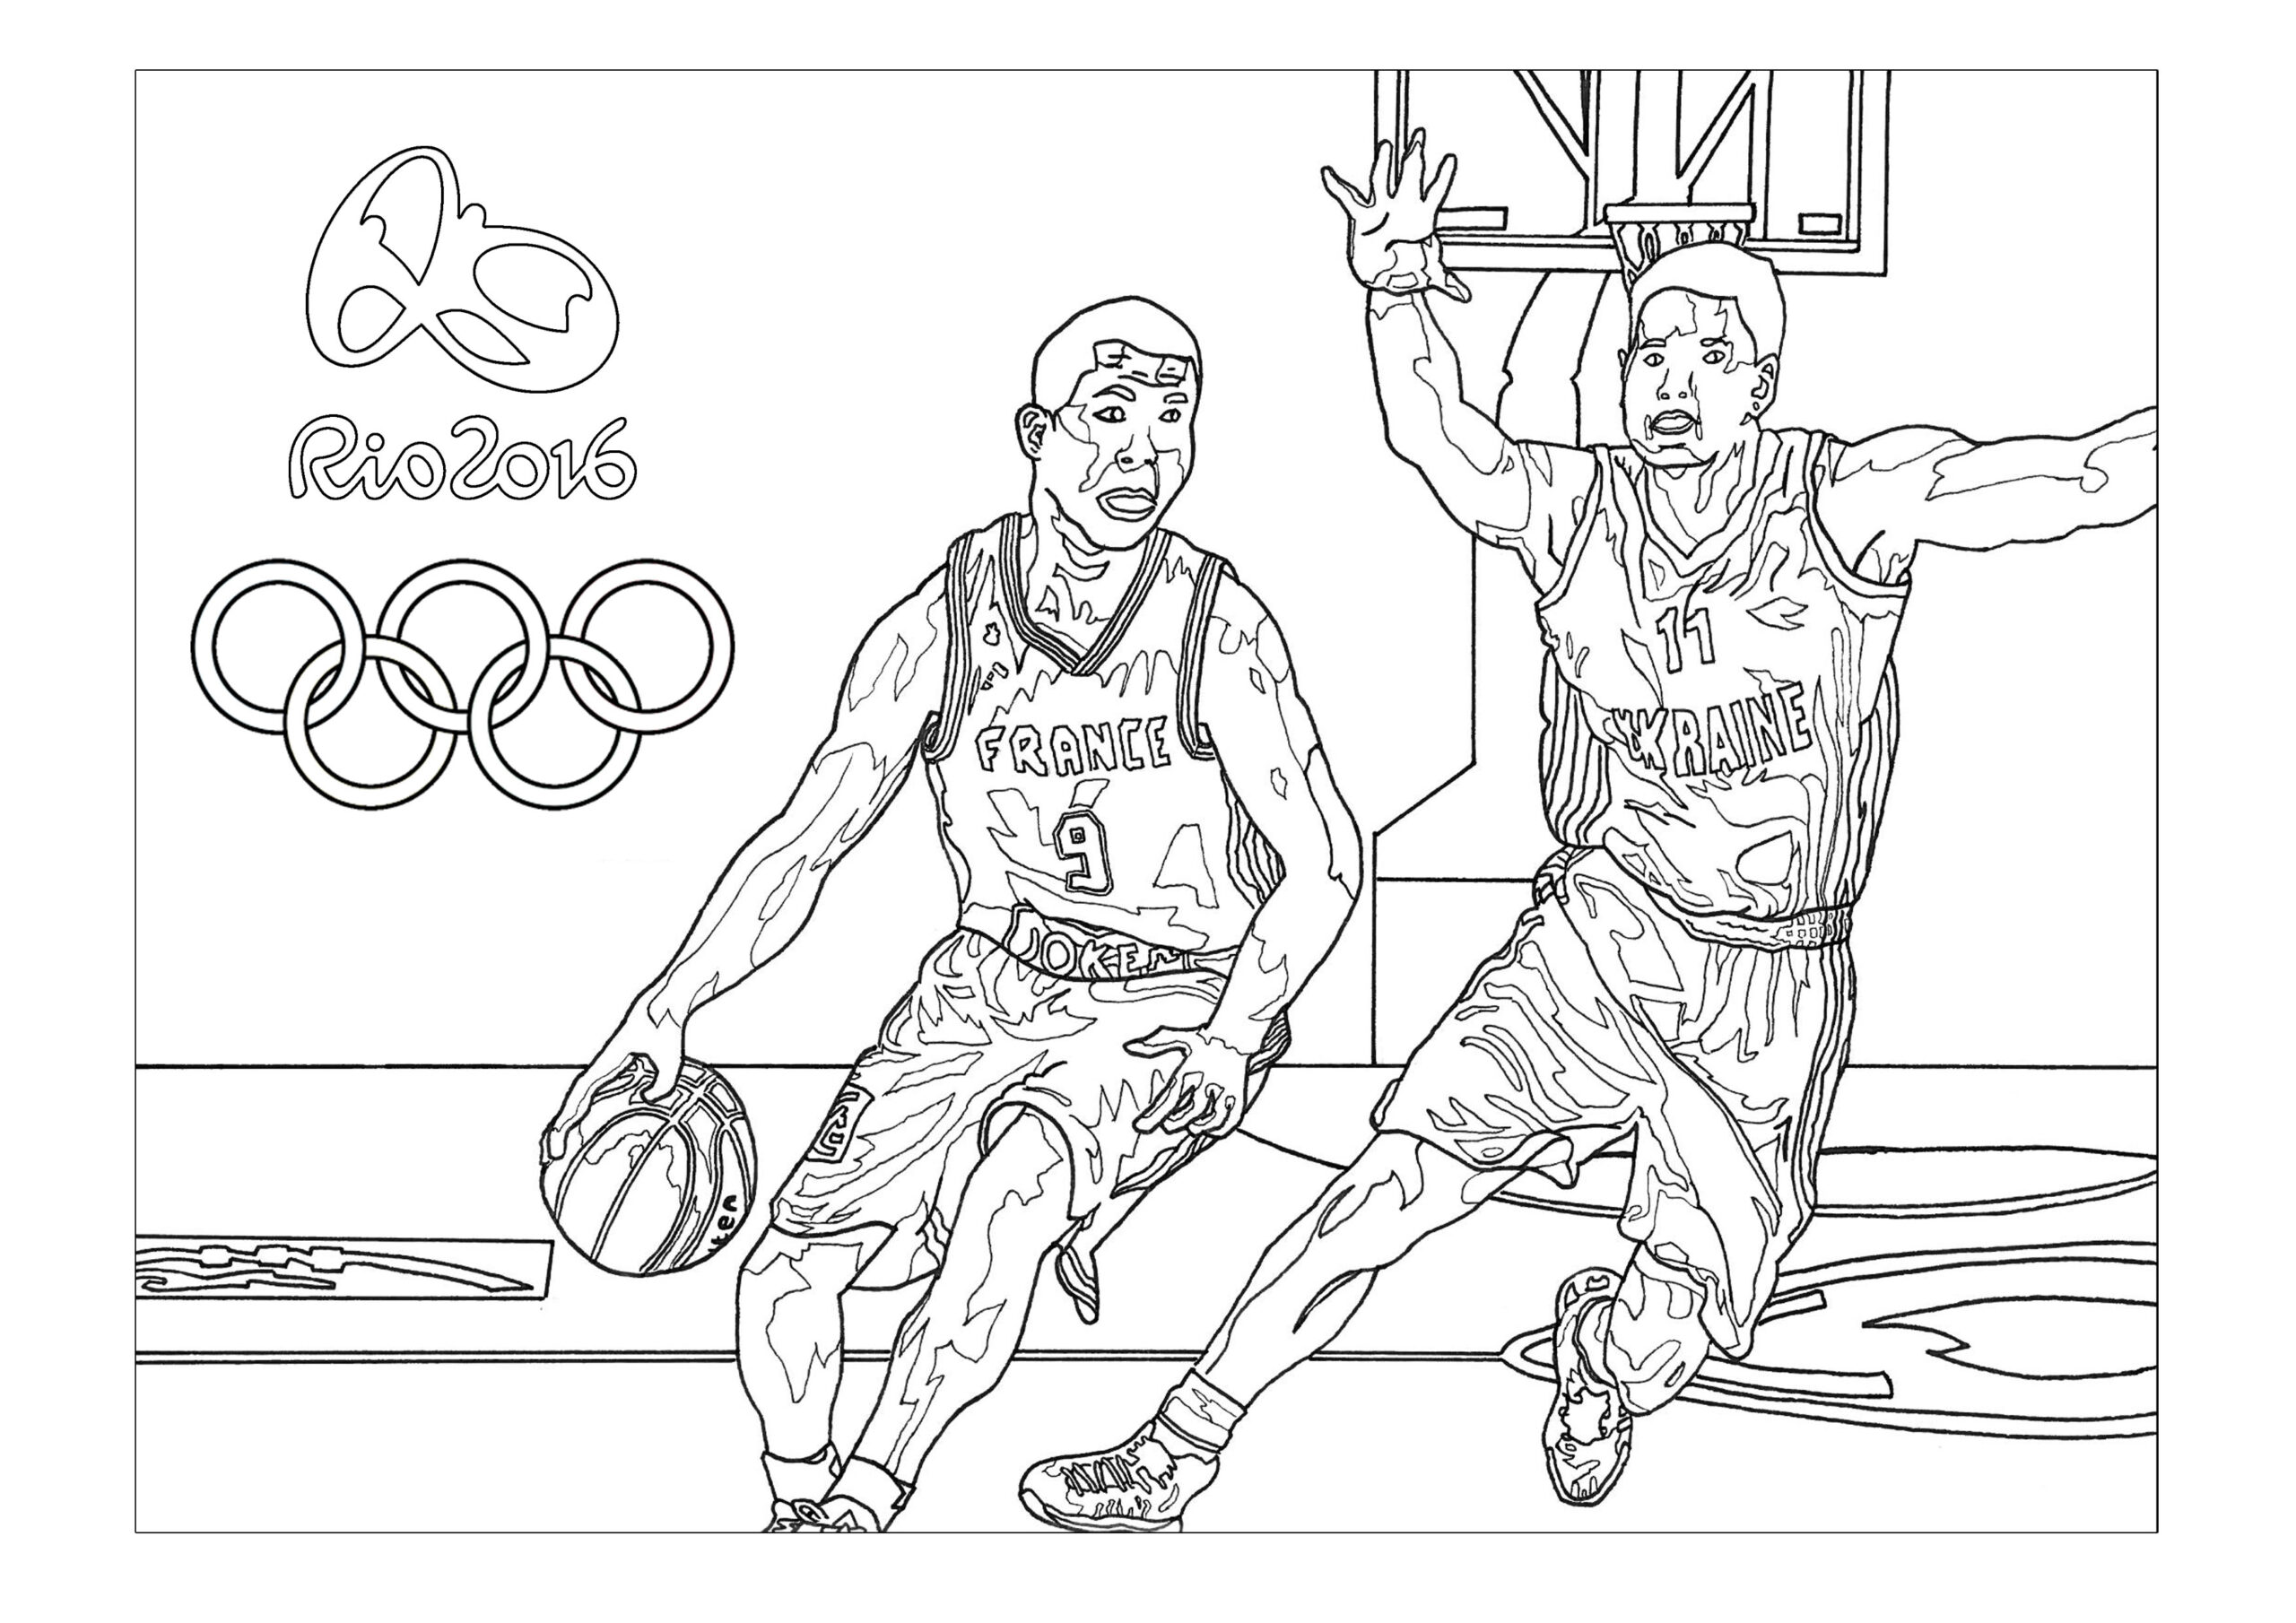 Jeux Olympiques Rio 2016 Basket - Coloriage Sur Les Jeux Olympiques encequiconcerne Coloriages Jeux Olympiques